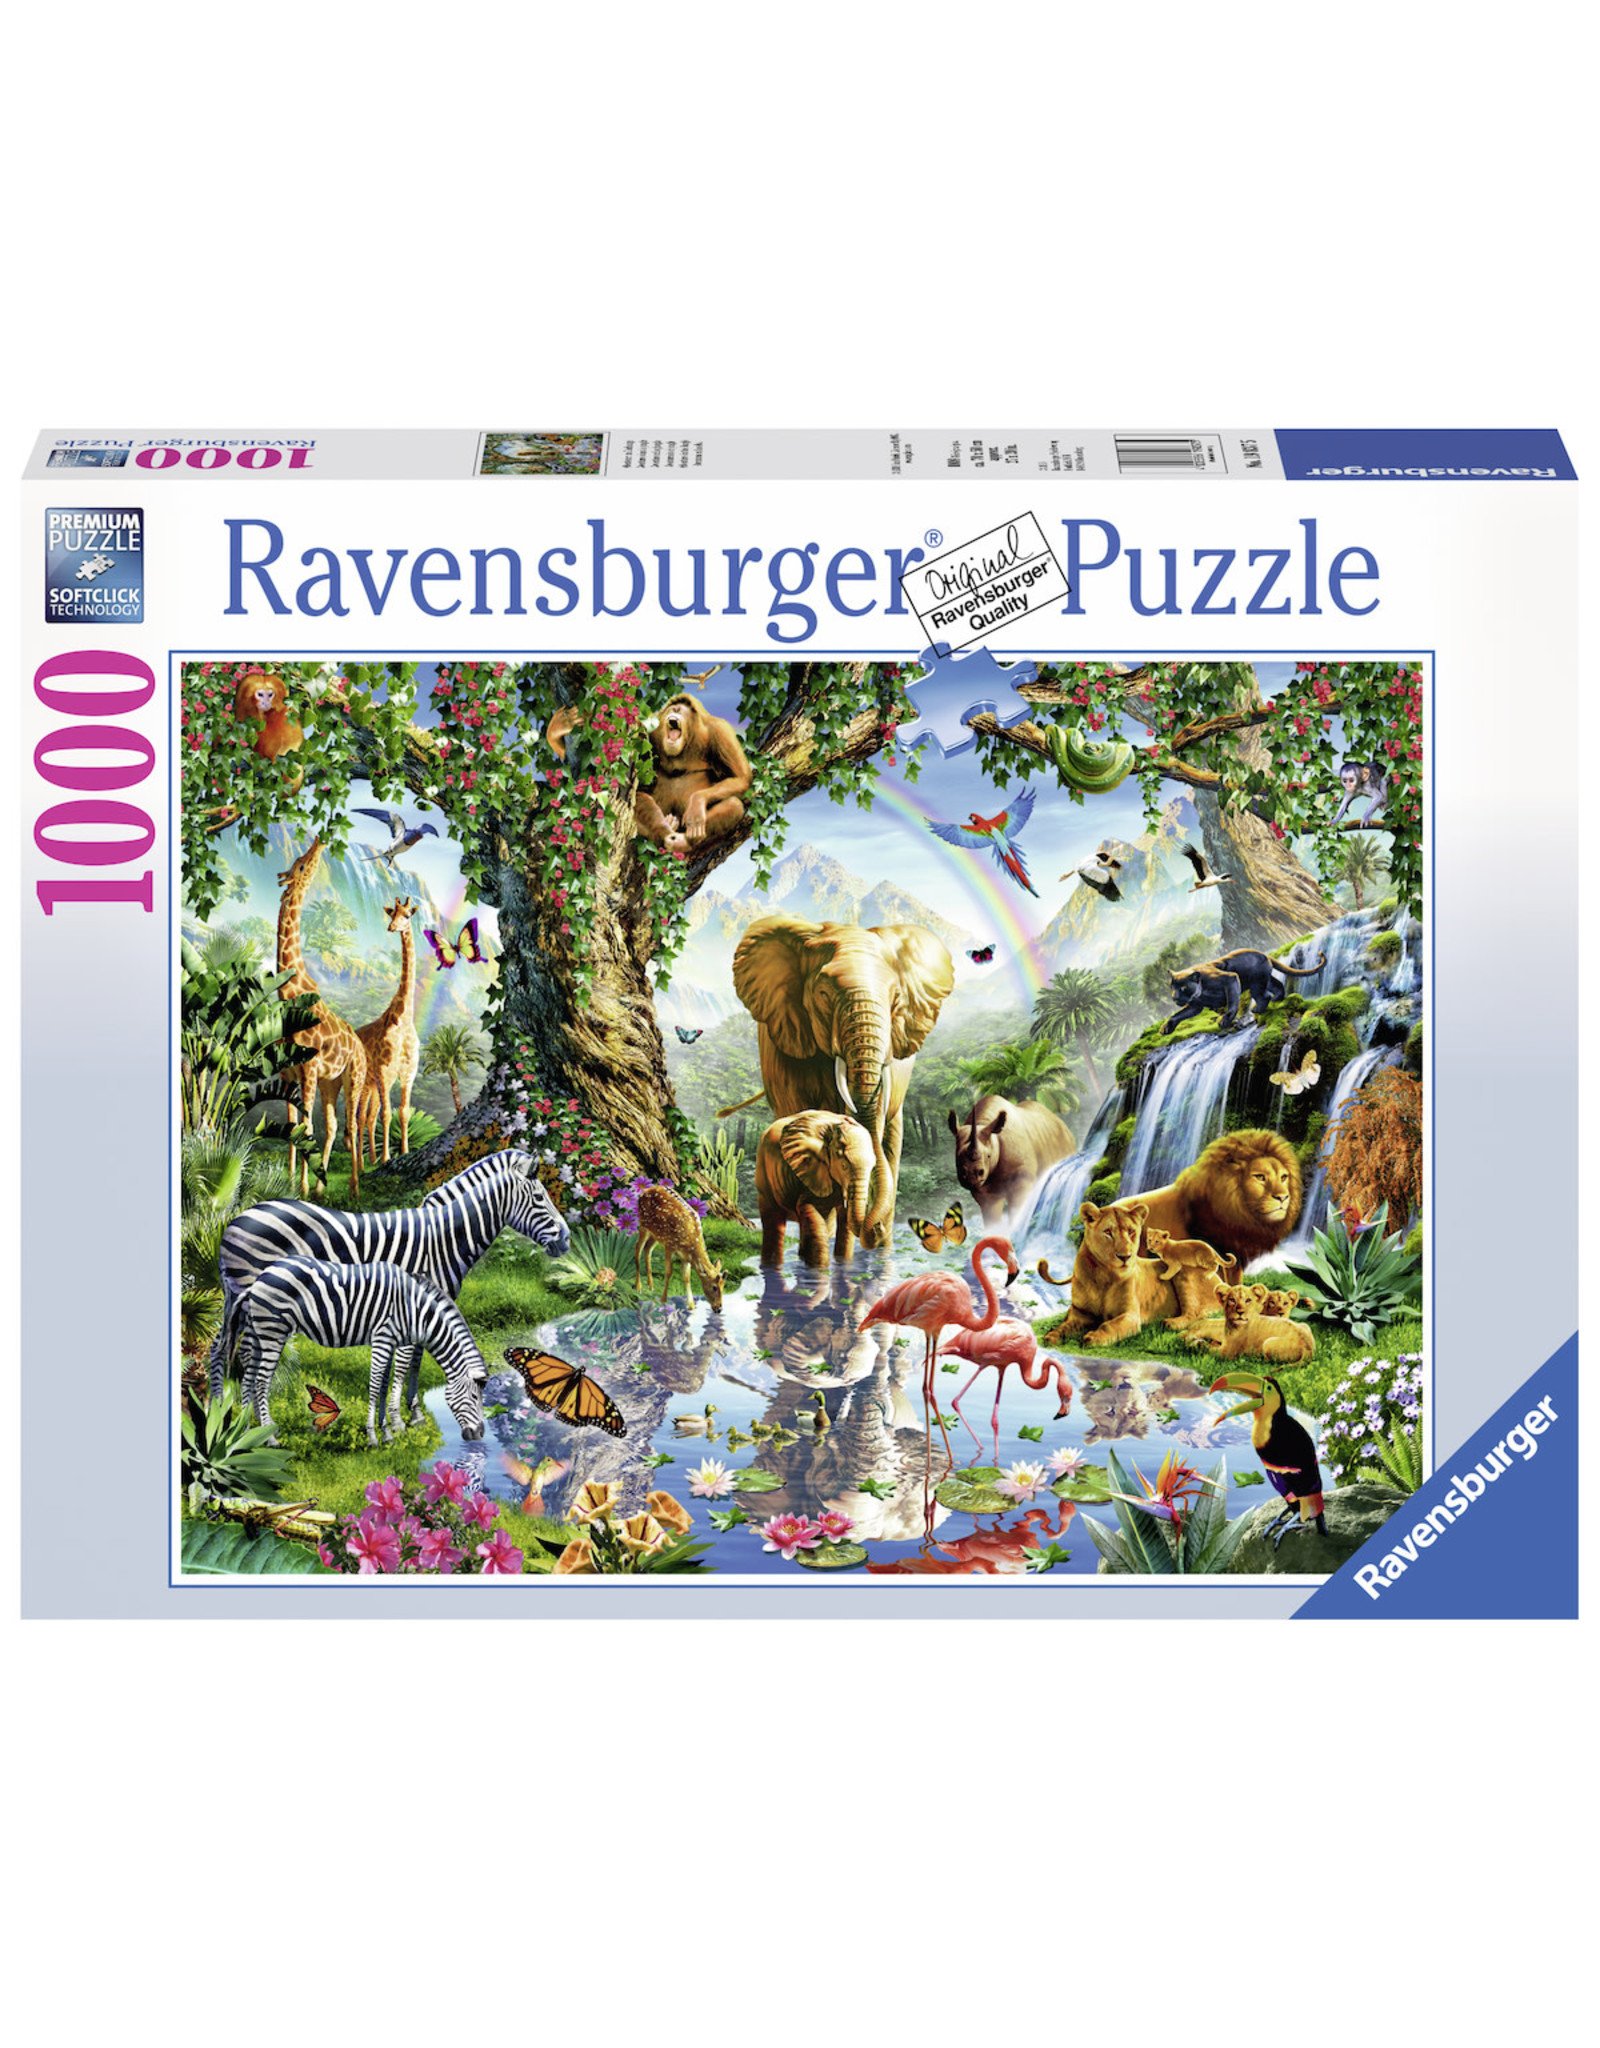 Ravensburger Ravensburger puzzel 198375 Avonturen In De Jungle 1000 stukjes